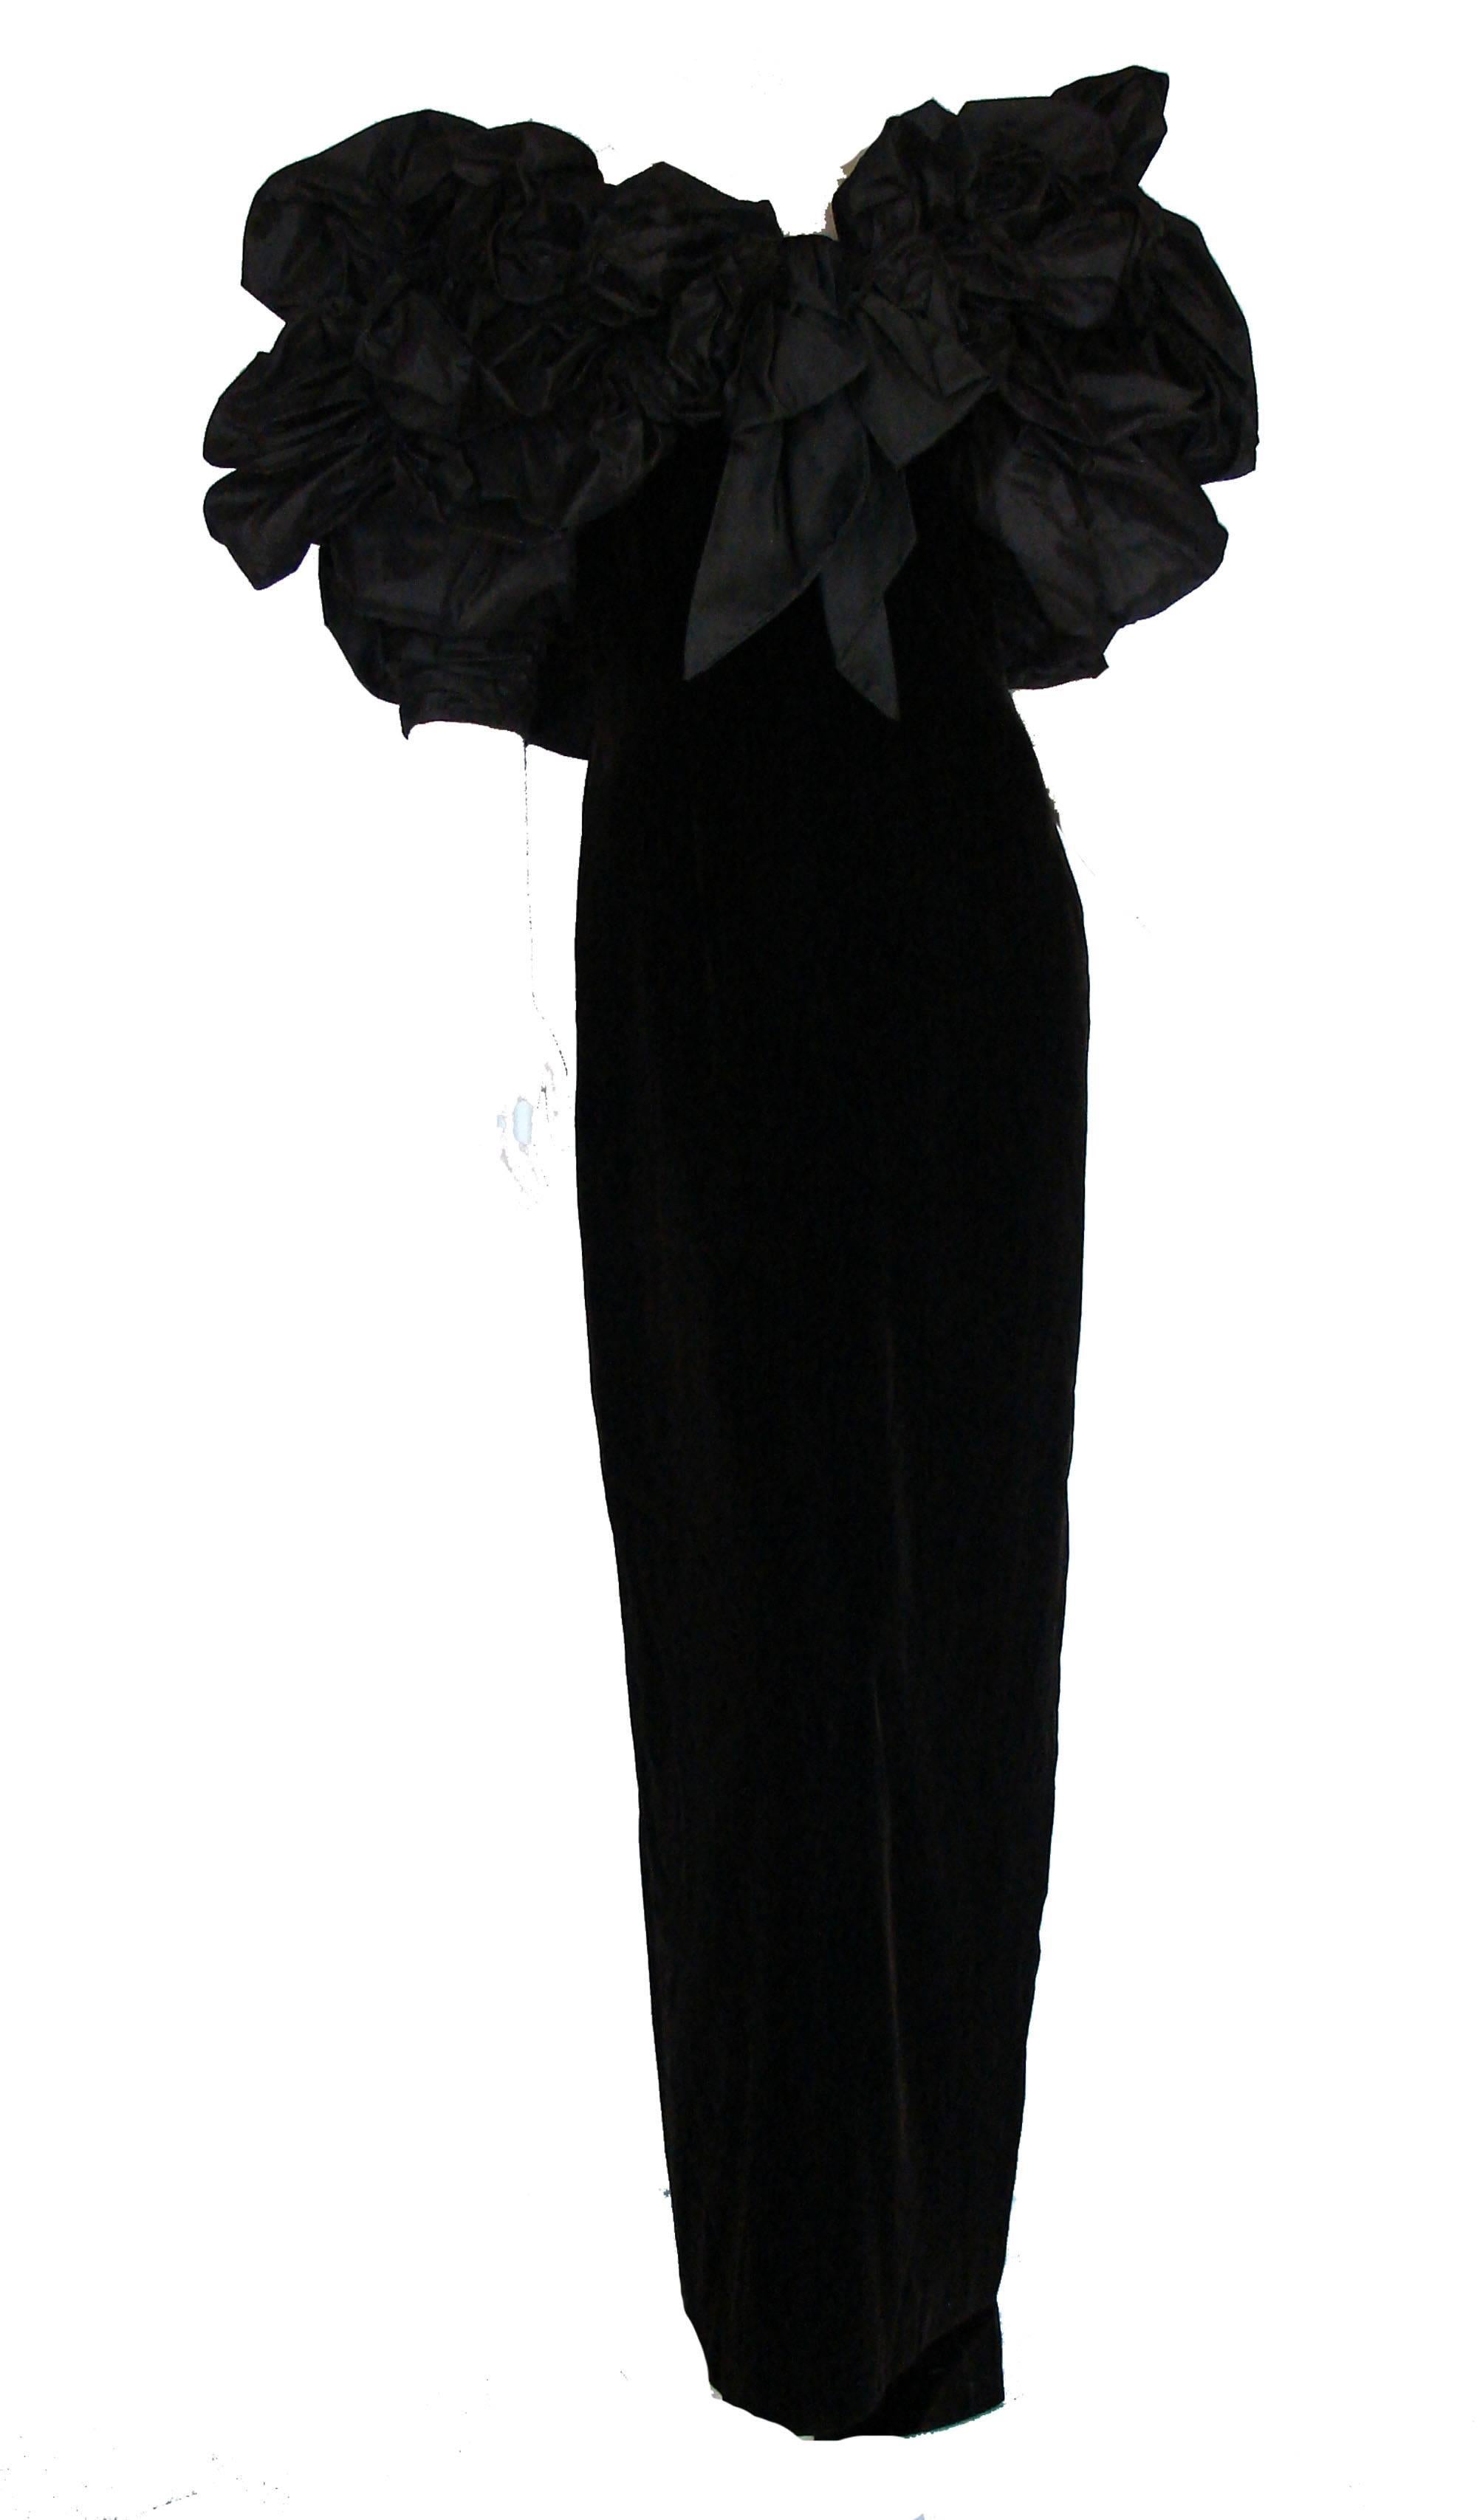 Women's Bill Blass Evening Gown Voluminous Silk Taffeta Top + Velvet Column Dress 80s M